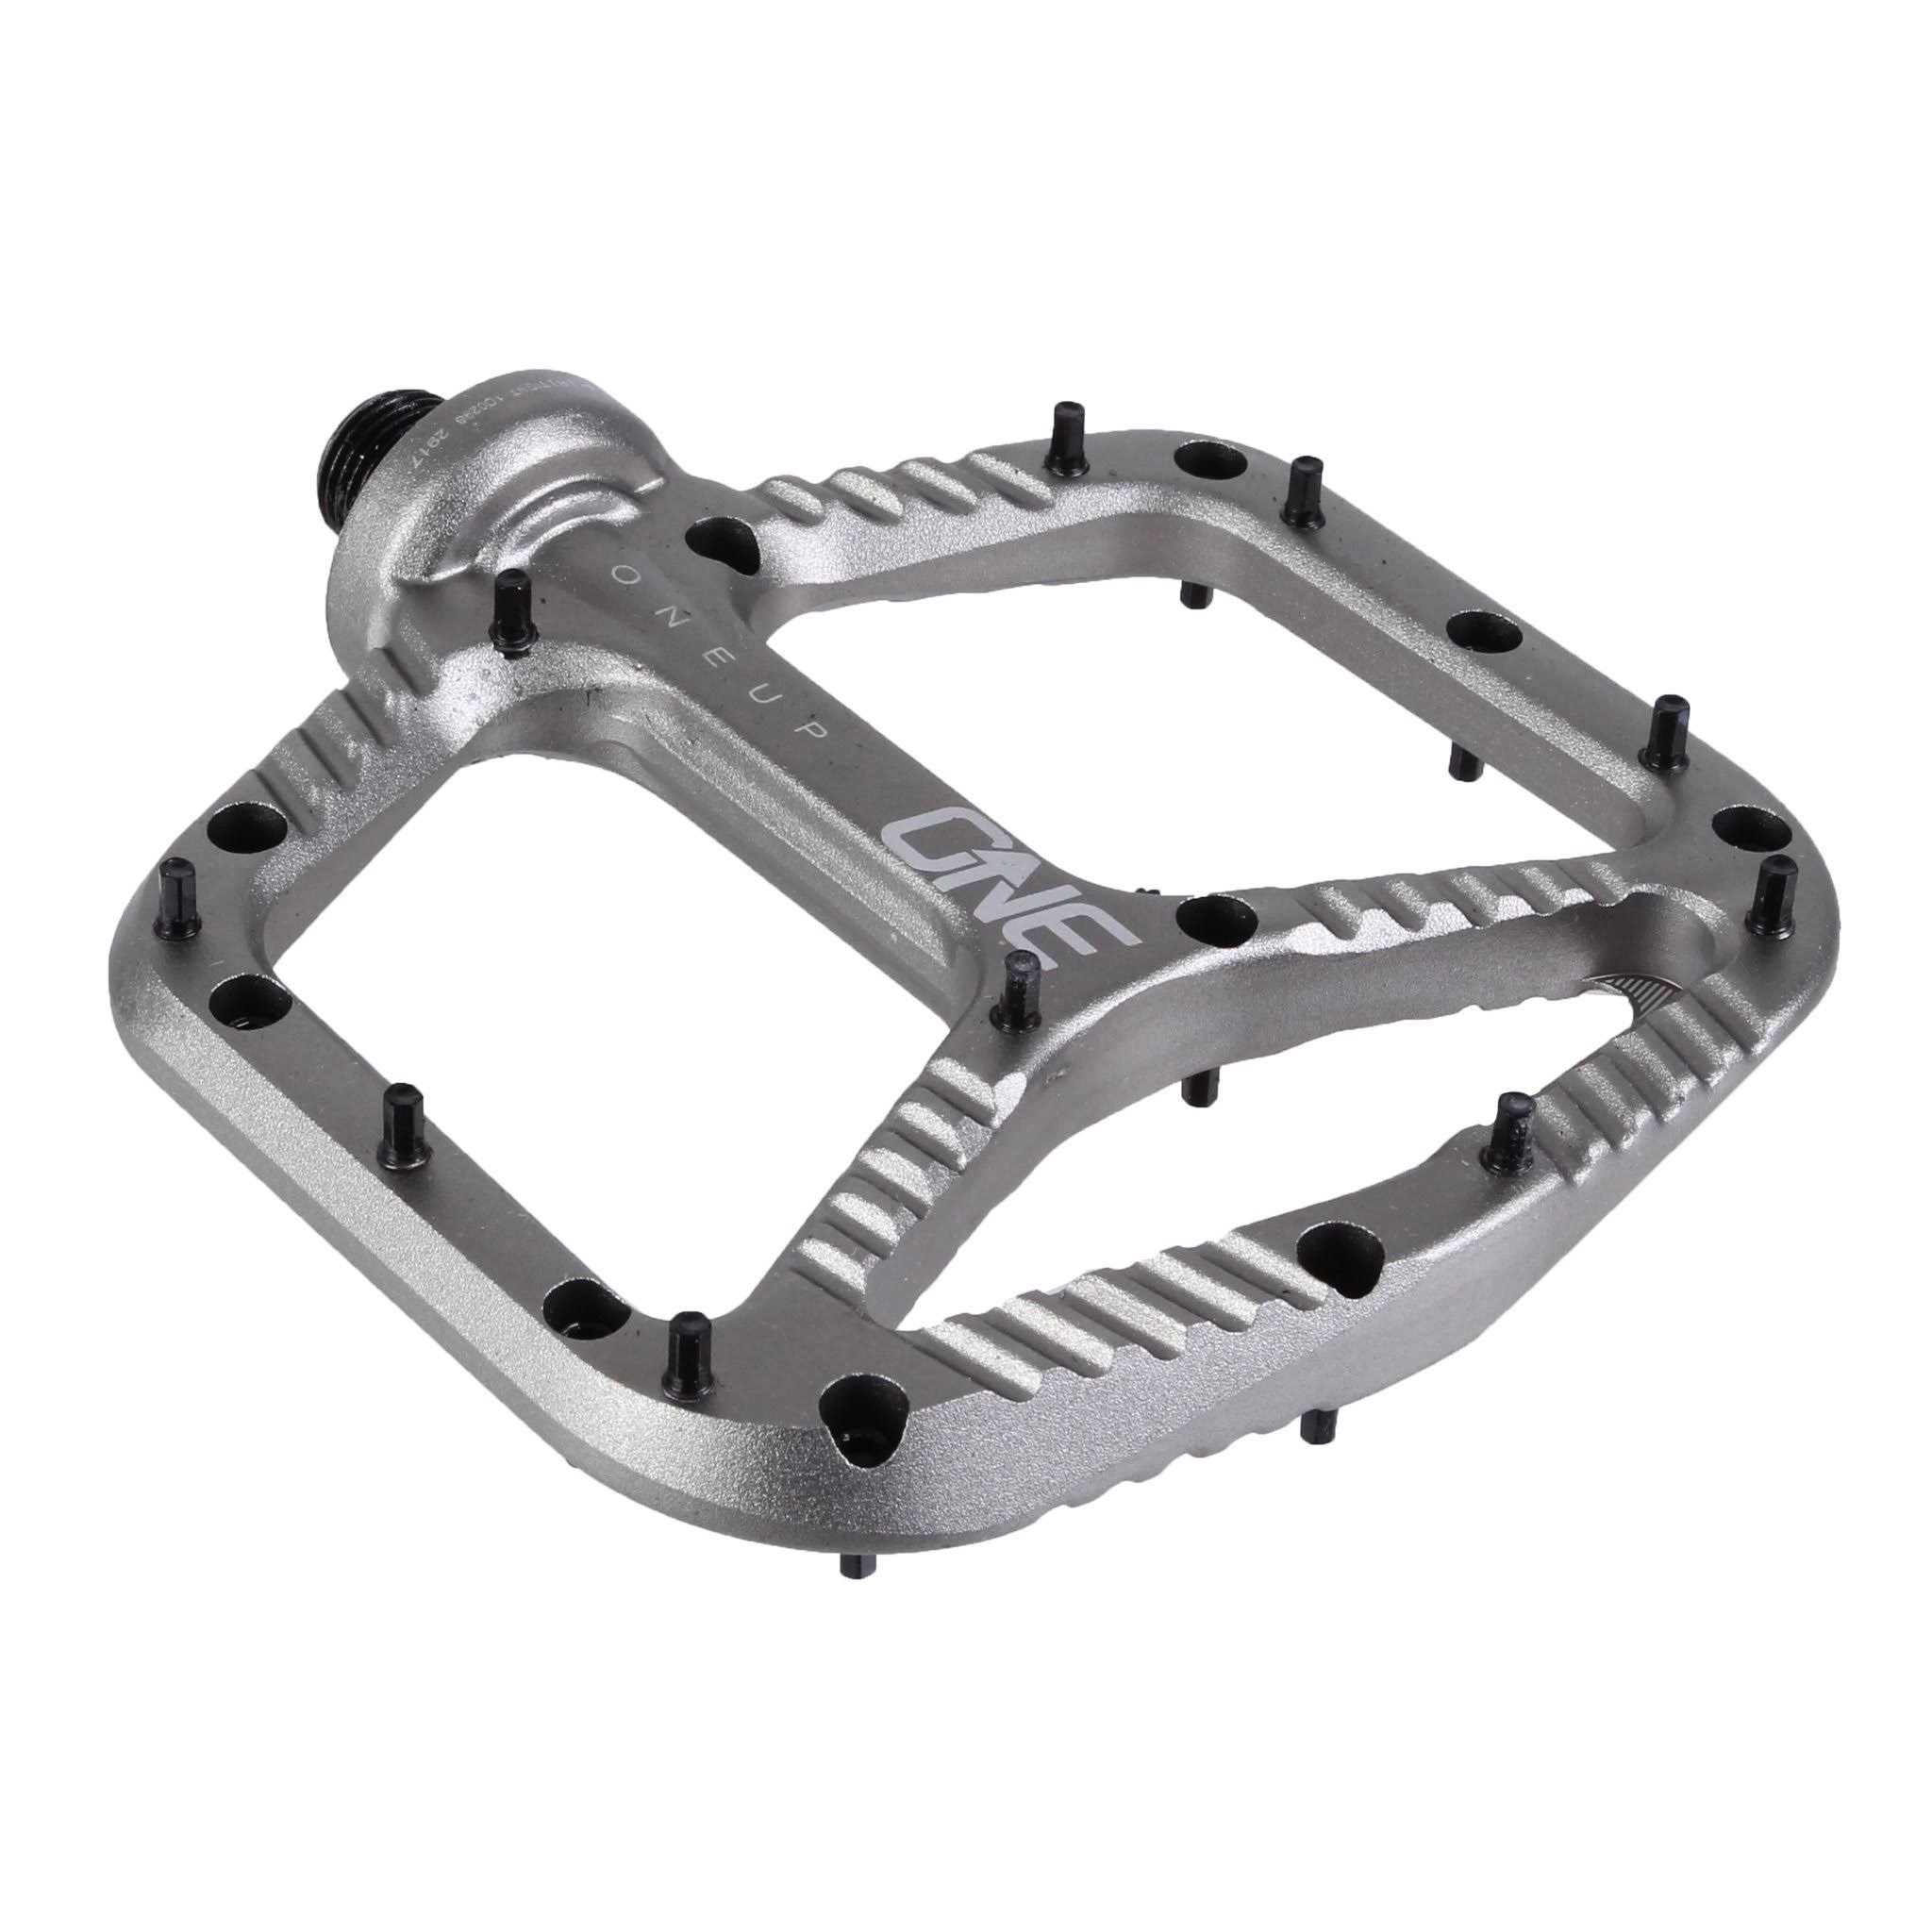 OneUp Components Aluminum Pedals - Grey